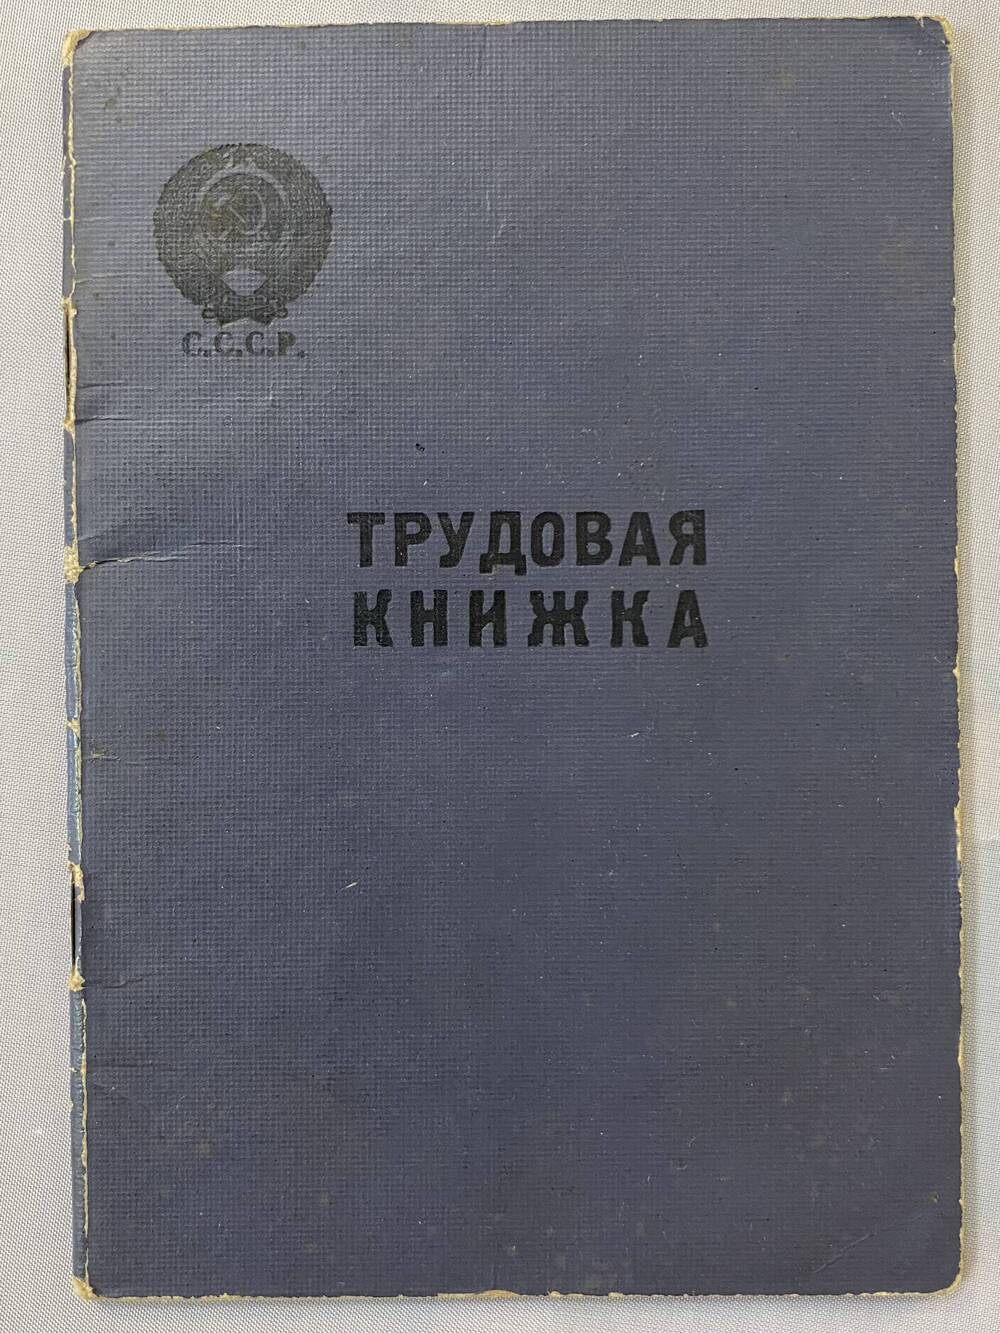 Книжка трудовая Вечкановой Софьи Ильиничны